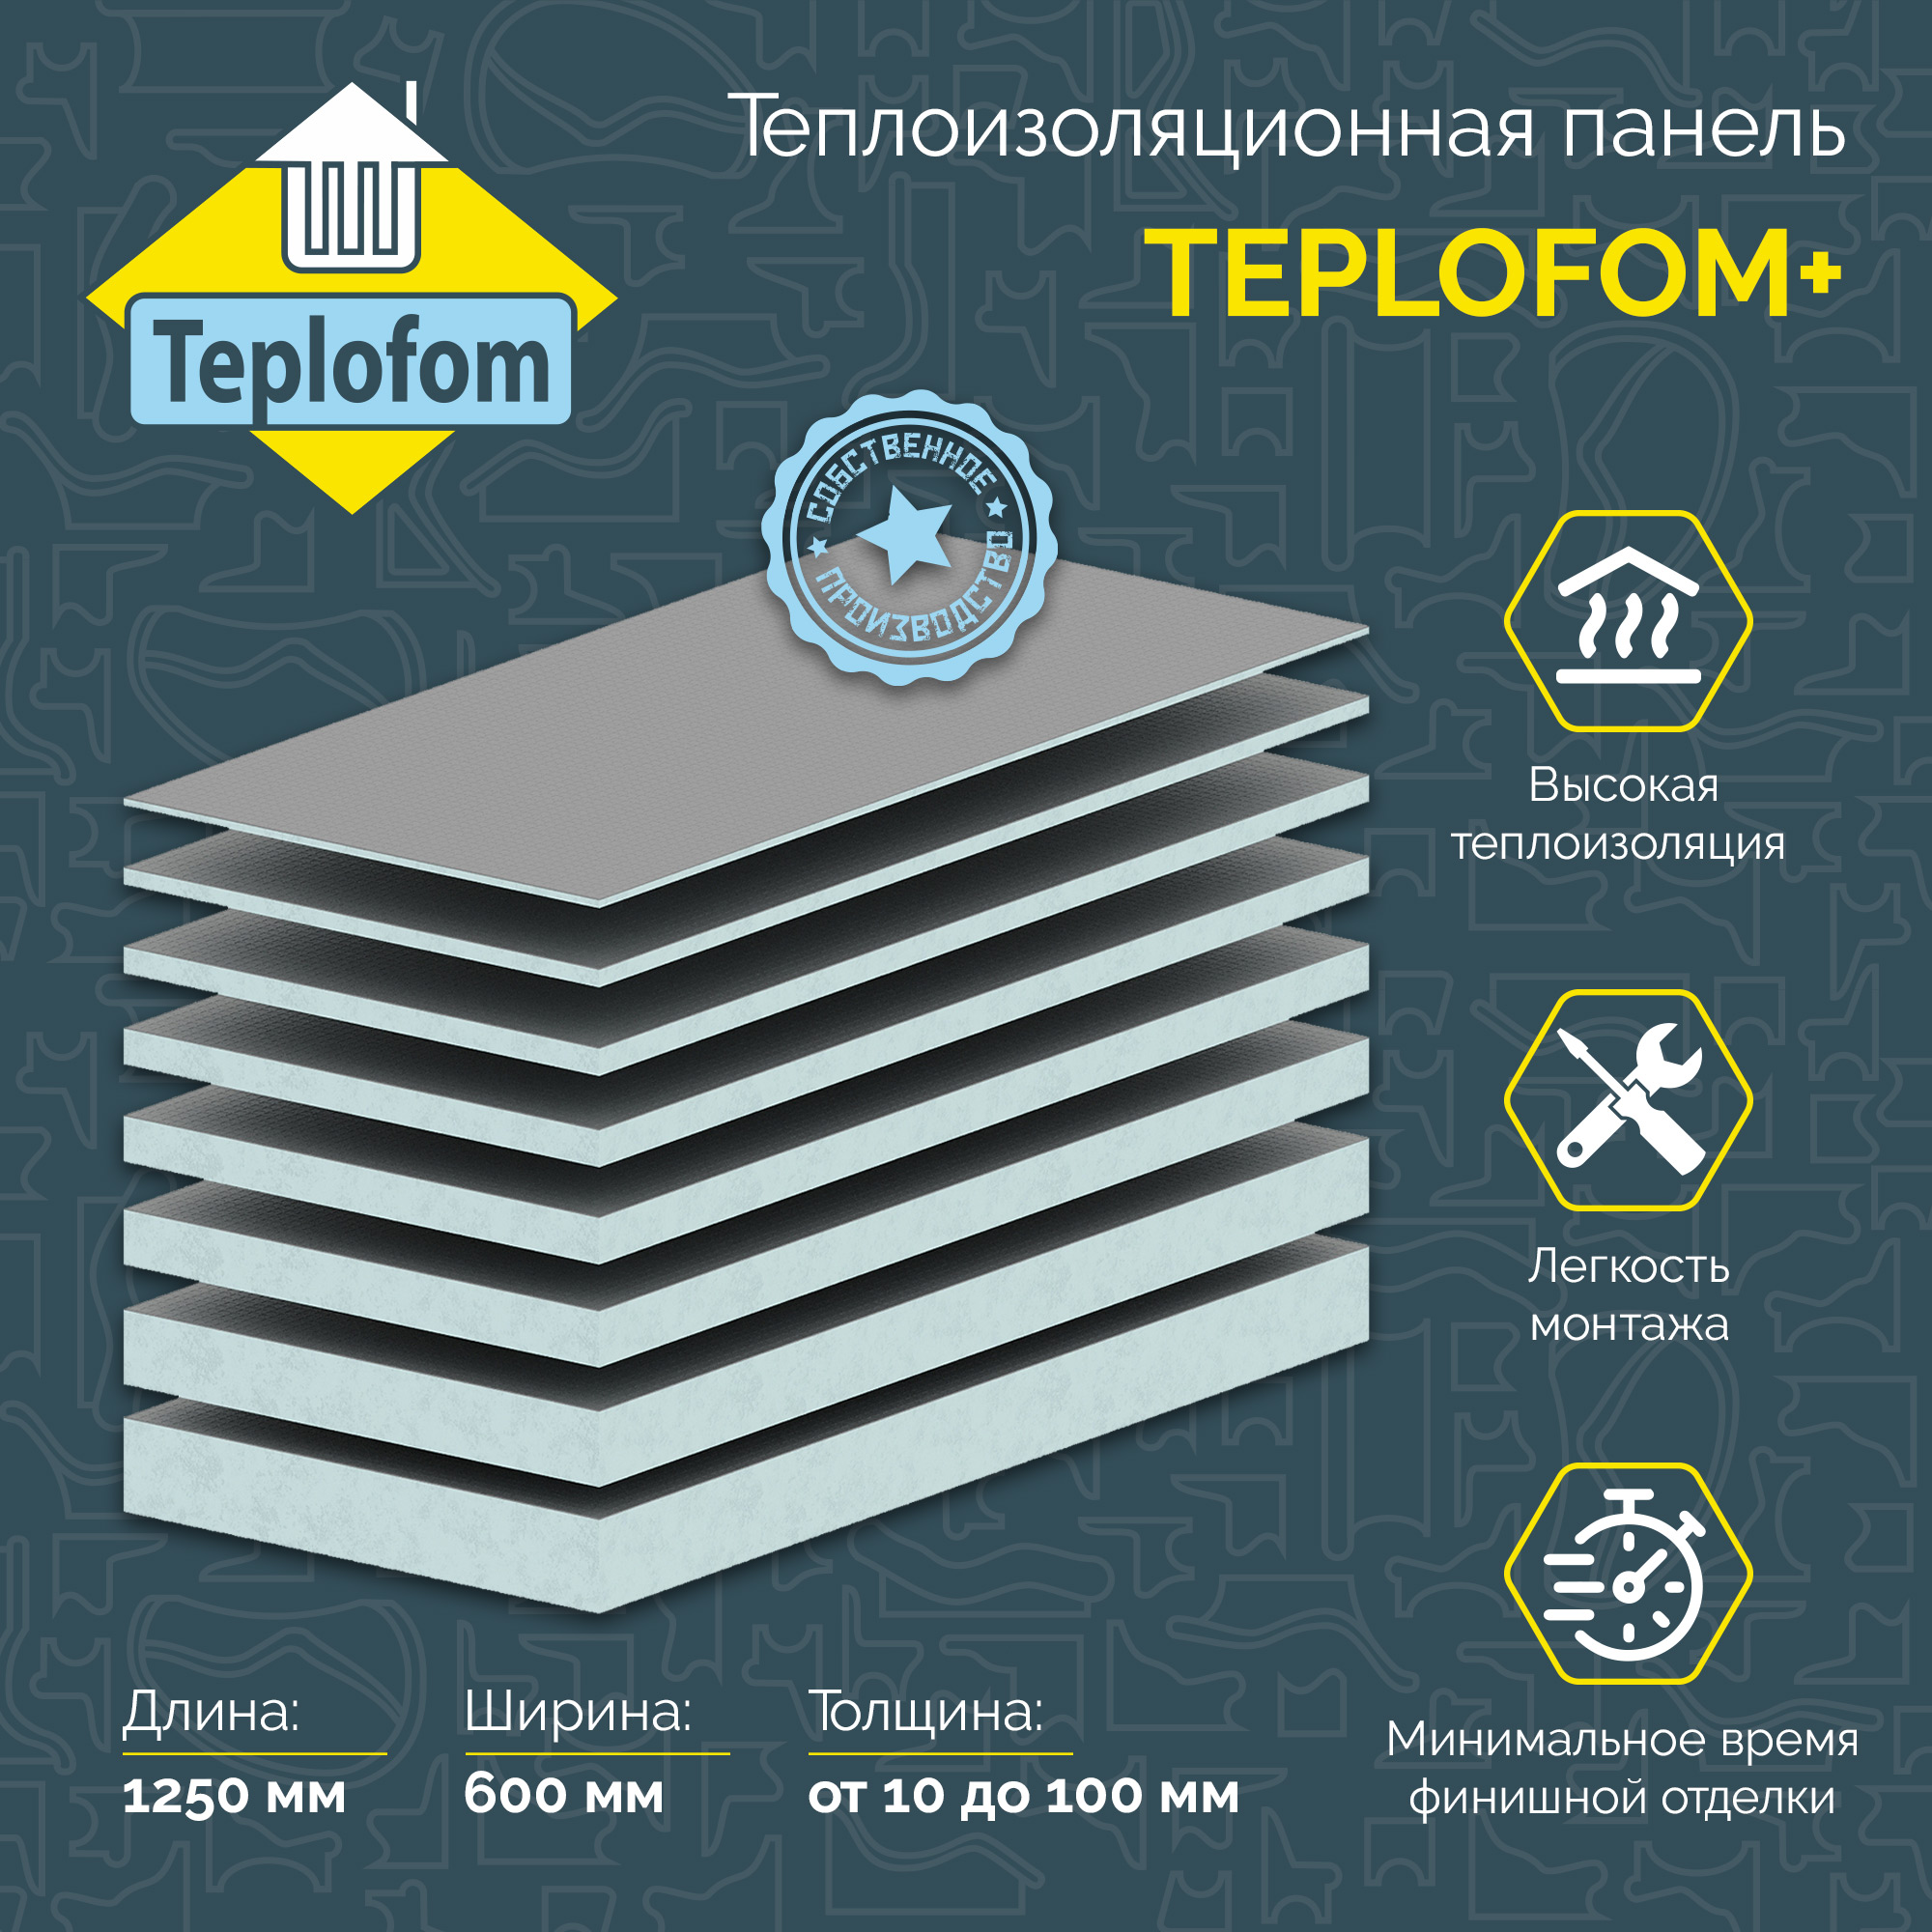 фото Теплоизоляционная панель teplofom+10 xps-02 1250x600x10 мм (двухсторонний слой)